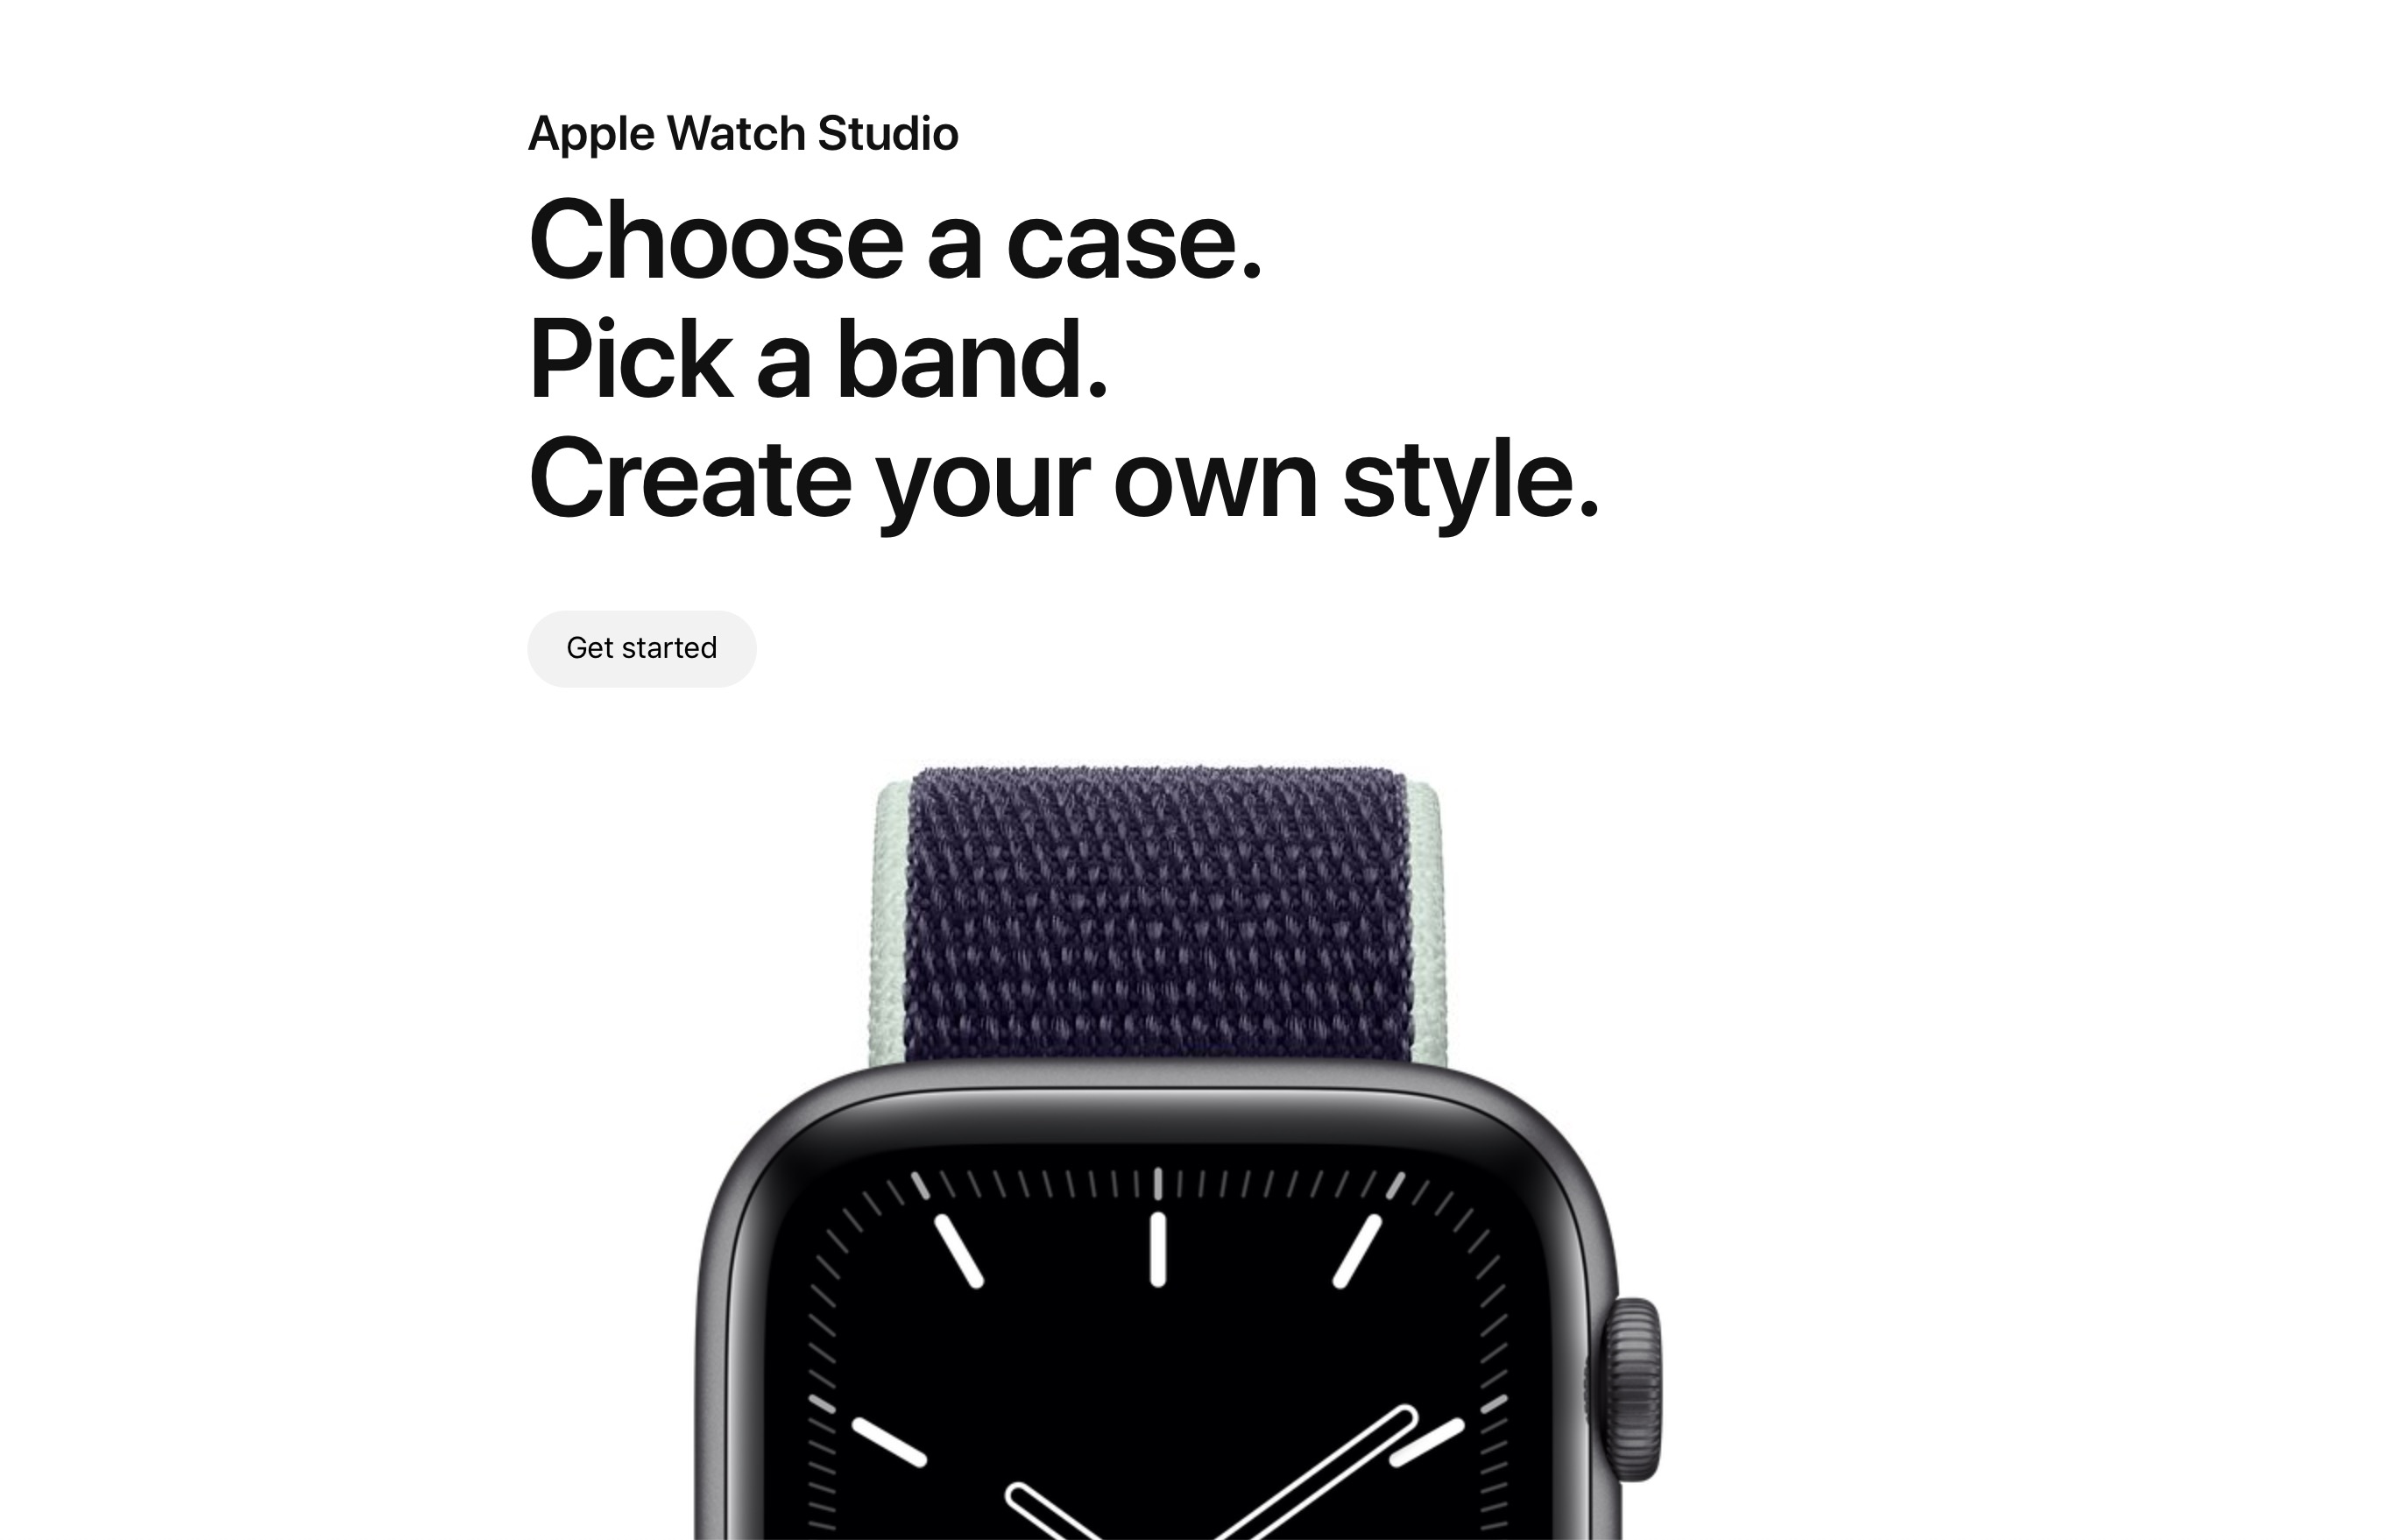 Apple Watch Studio, khu vực để bạn tự lựa chọn cho mình chiếc Apple Watch Series 5 phù hợp nhất